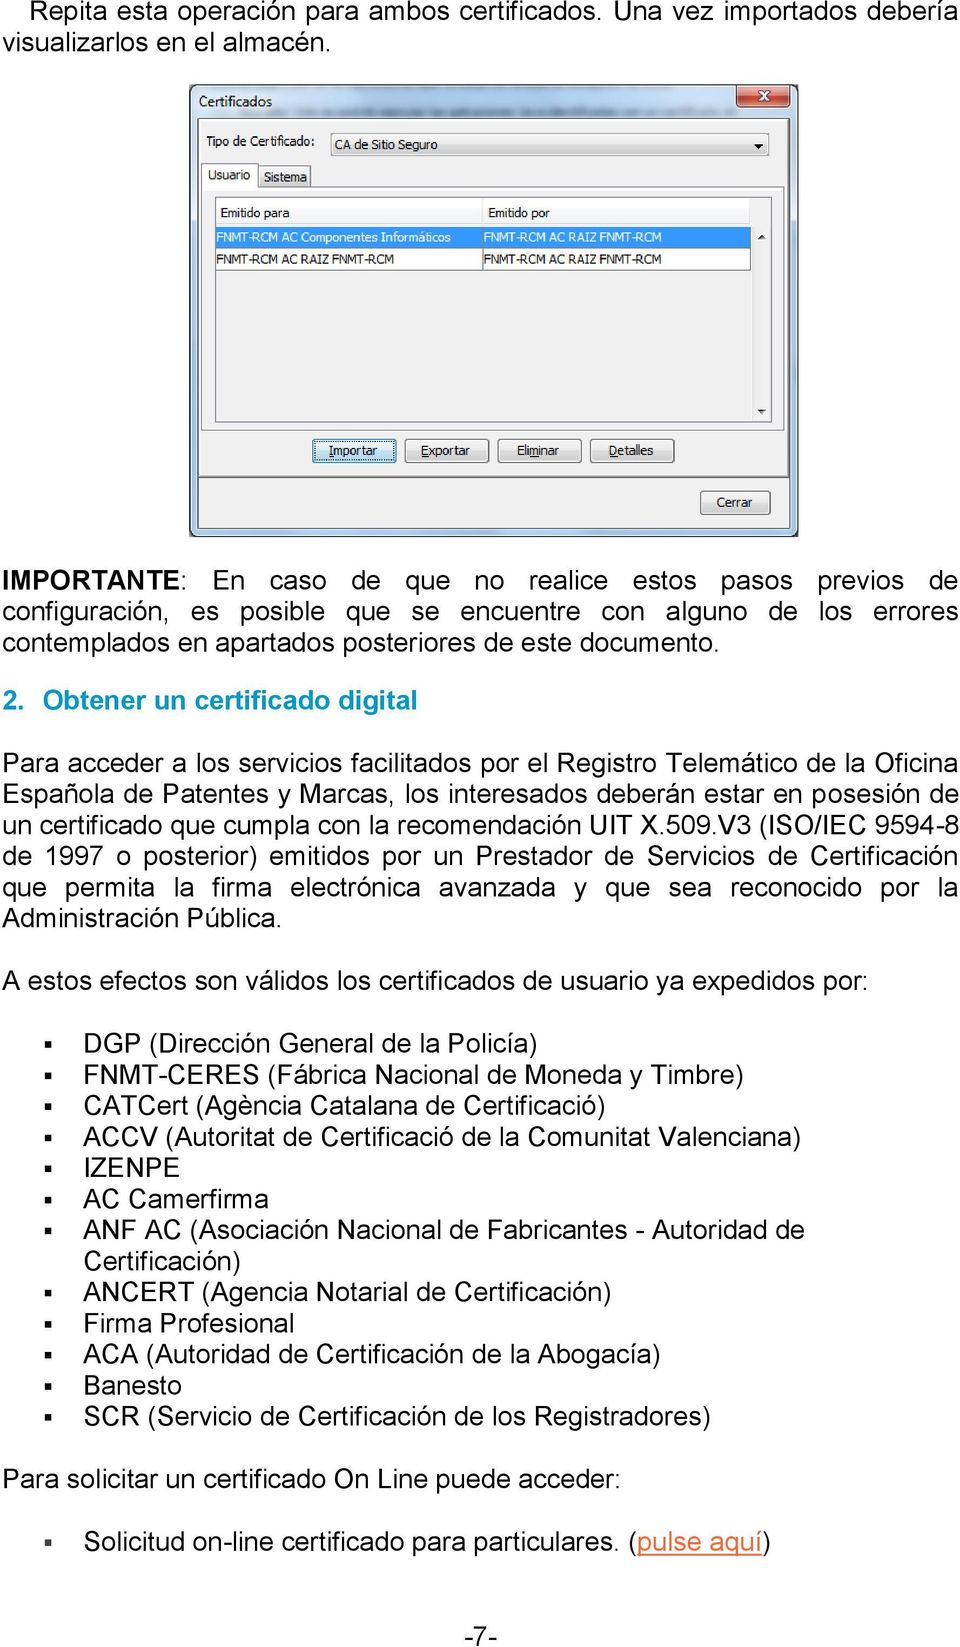 Obtener un certificado digital Para acceder a los servicios facilitados por el Registro Telemático de la Oficina Española de Patentes y Marcas, los interesados deberán estar en posesión de un